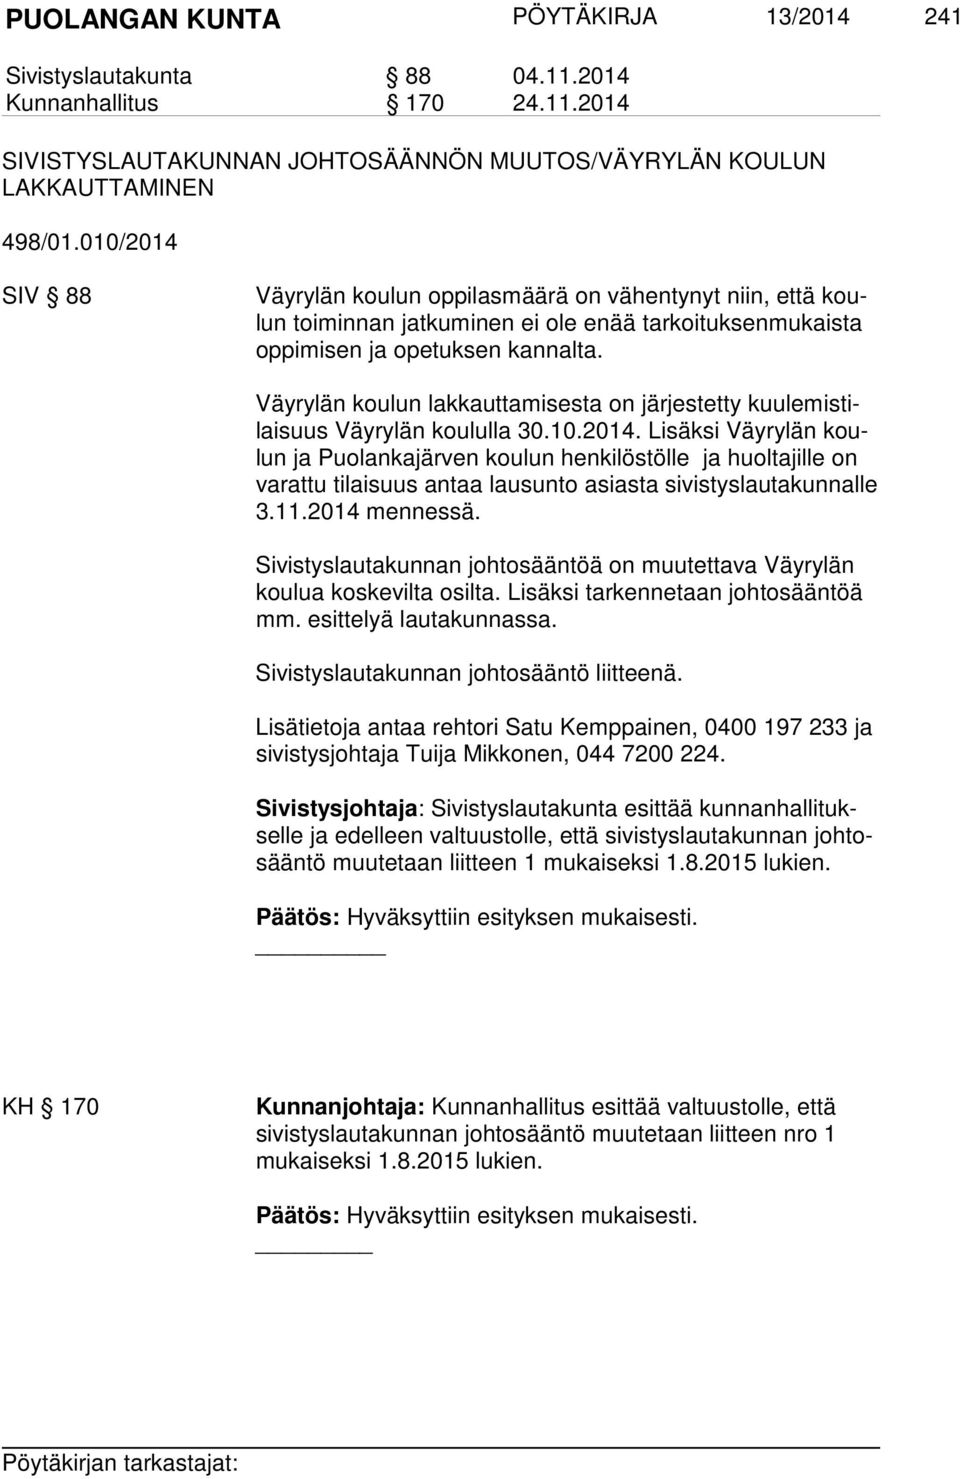 Väyrylän koulun lakkauttamisesta on järjestetty kuu le mis tilai suus Väyrylän koululla 30.10.2014.